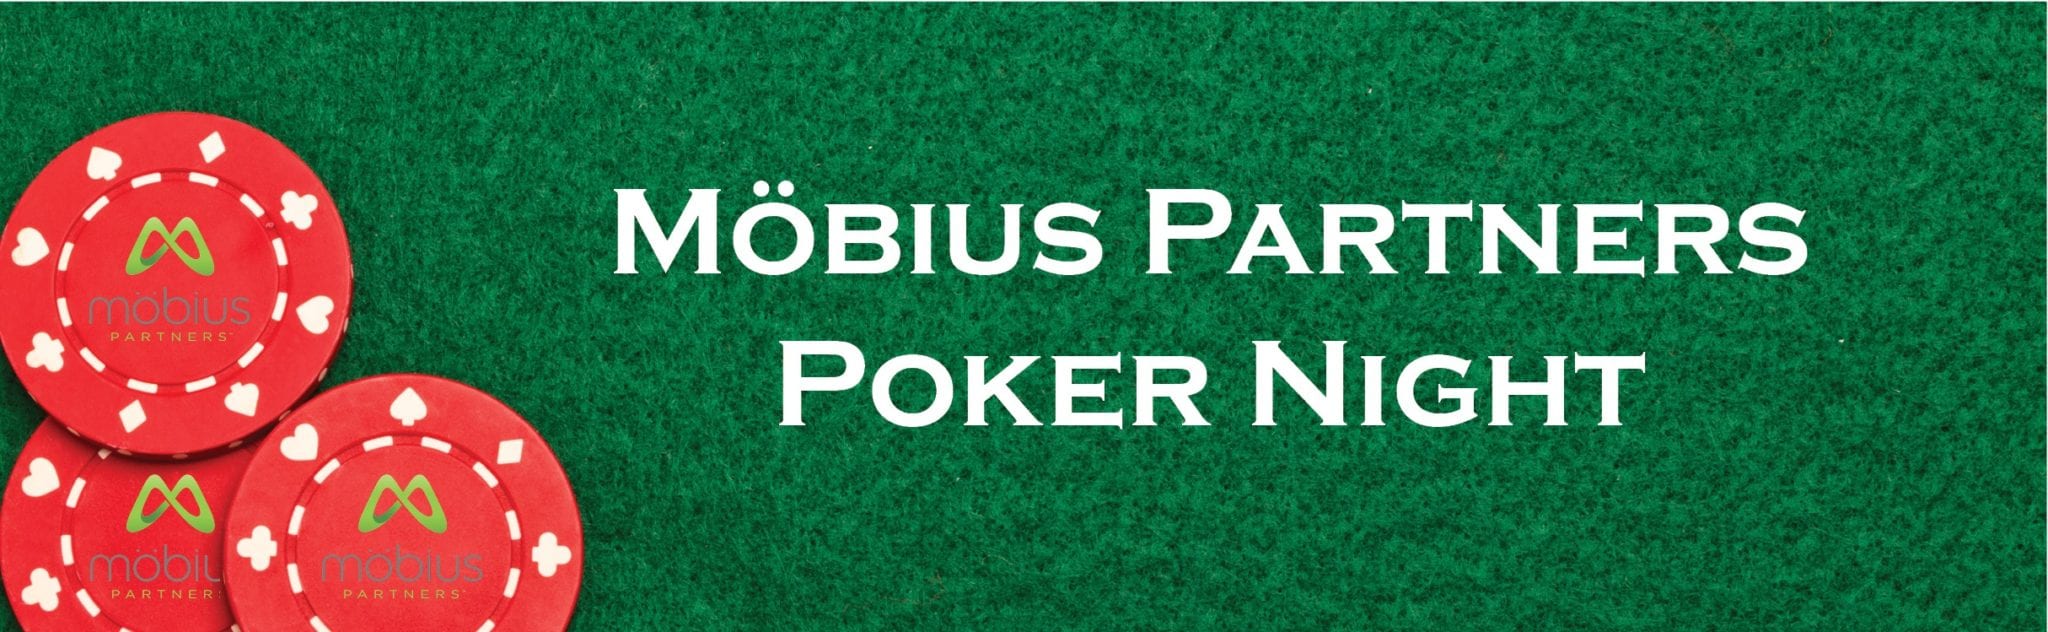 mobius poker night2